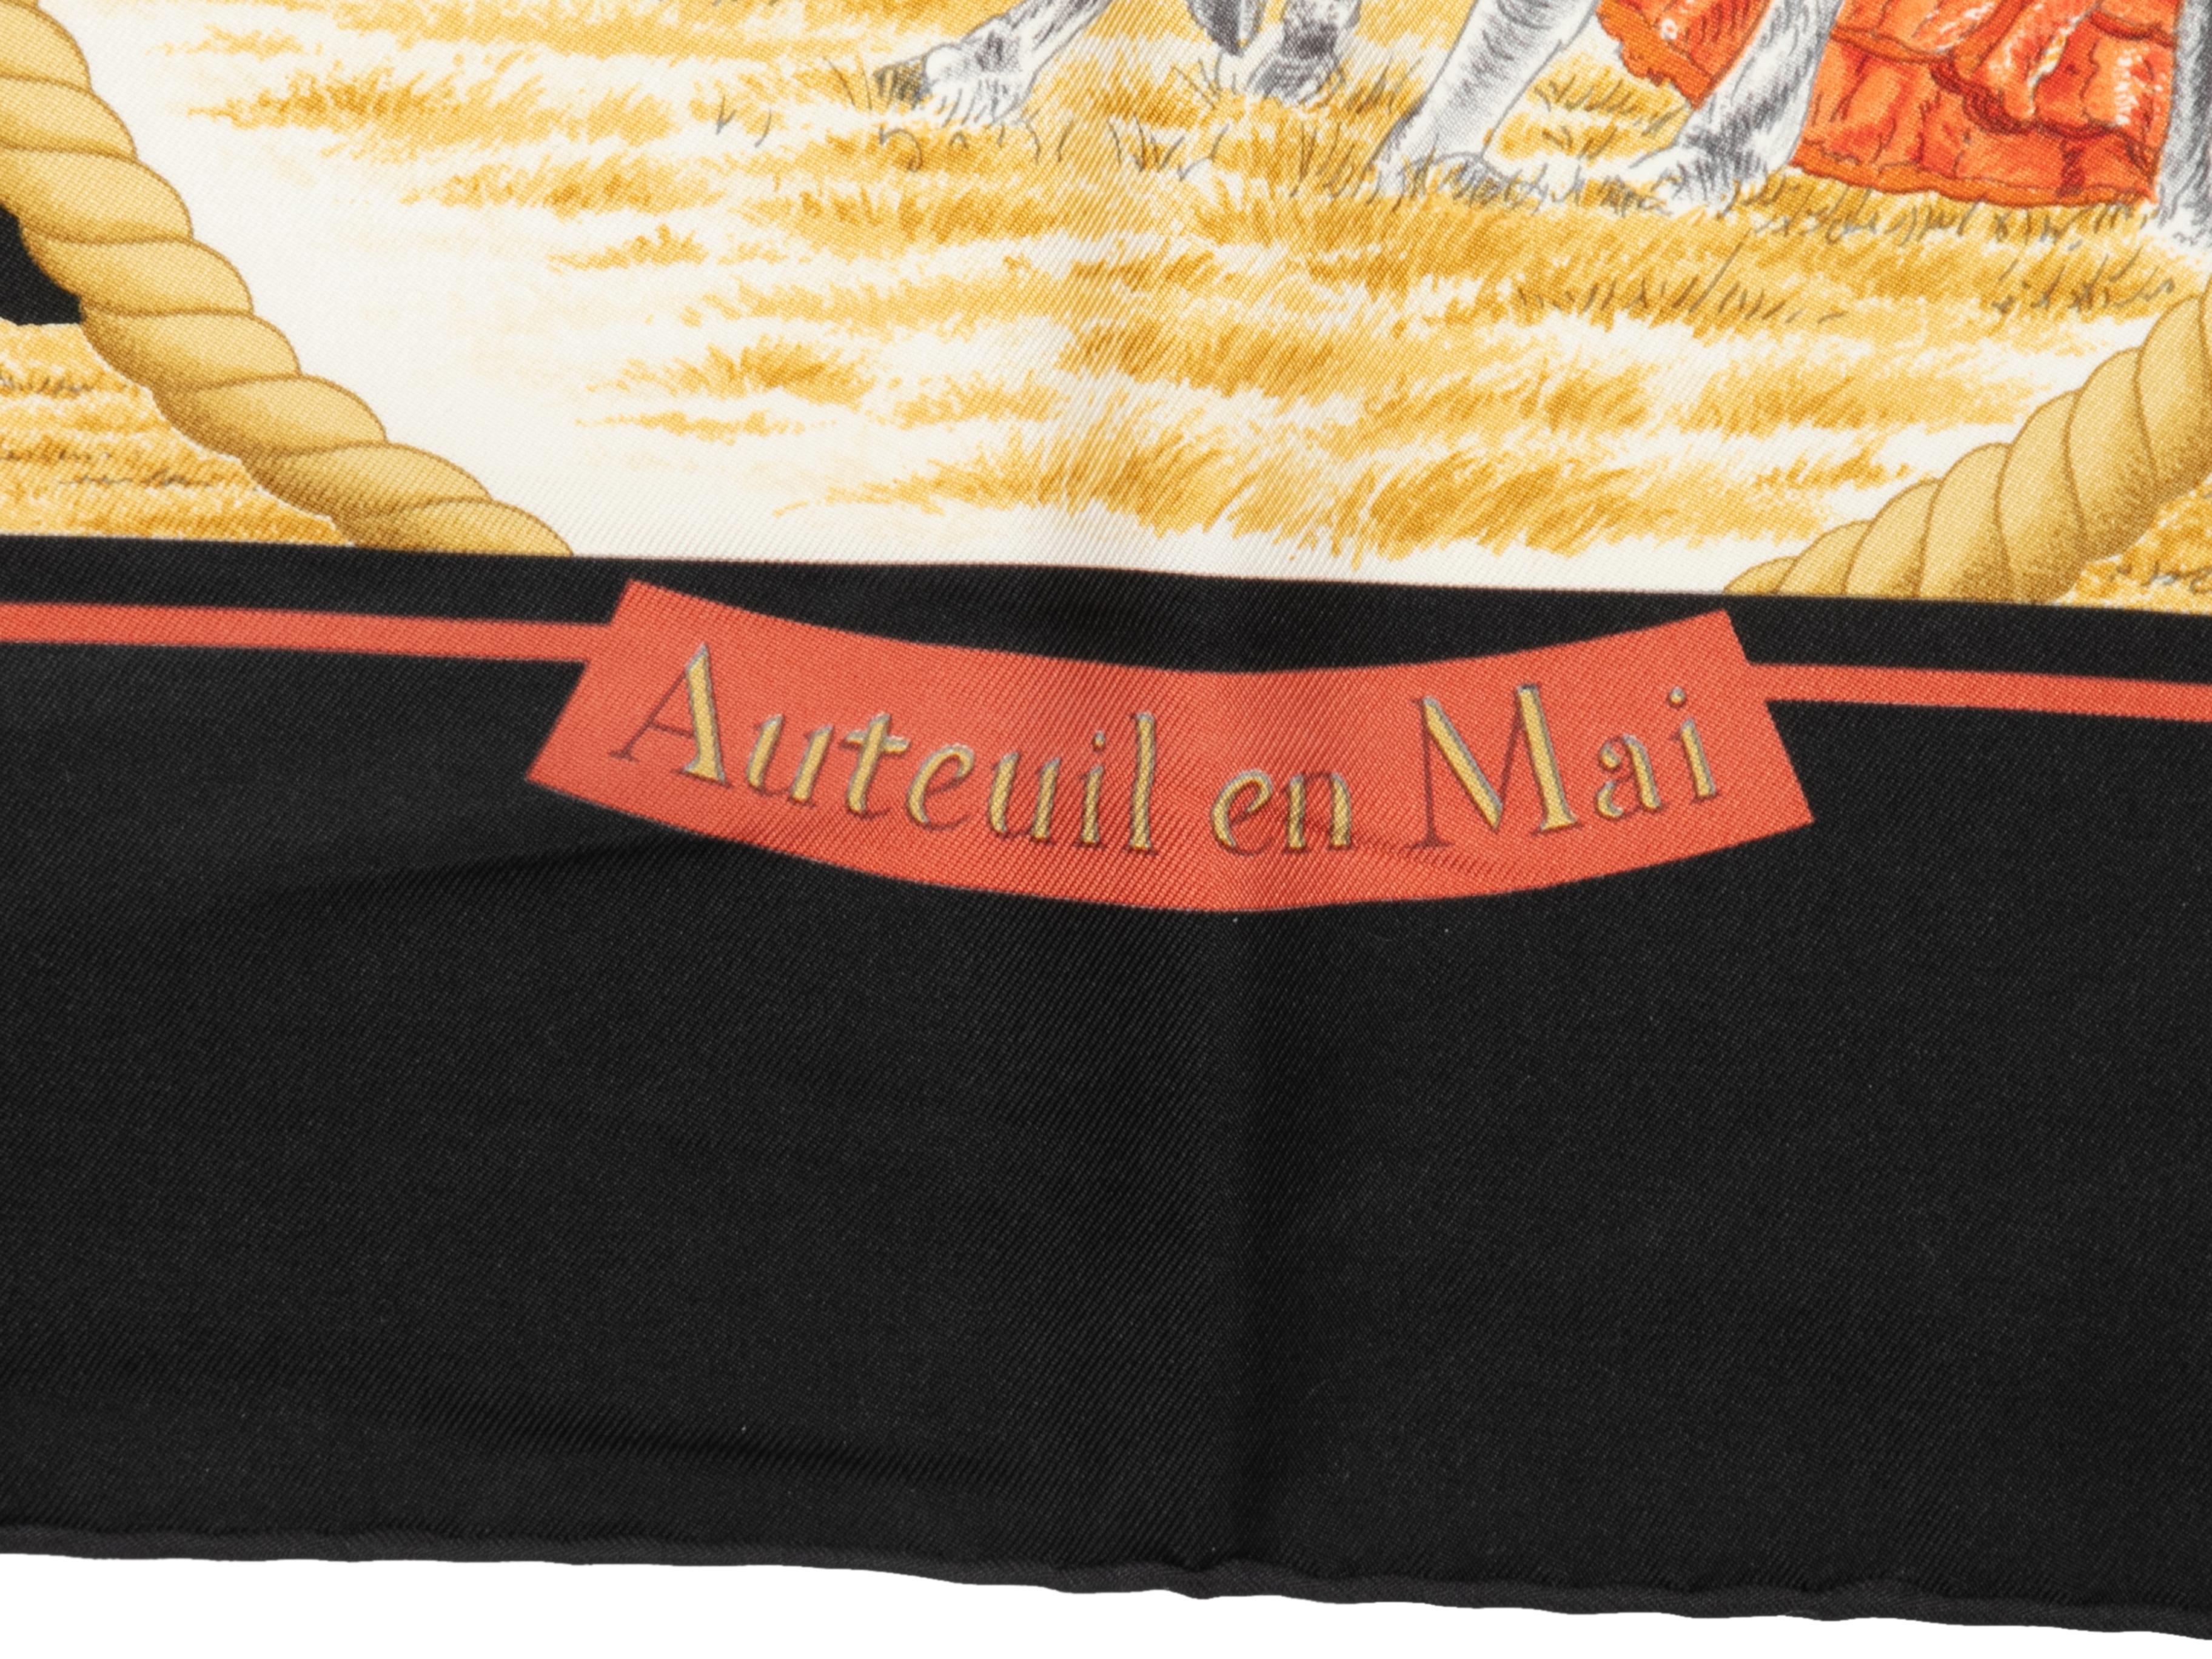 Foulard en soie à motif Auteuil en Mai, noir et multicolore, Hermès. Largeur 34